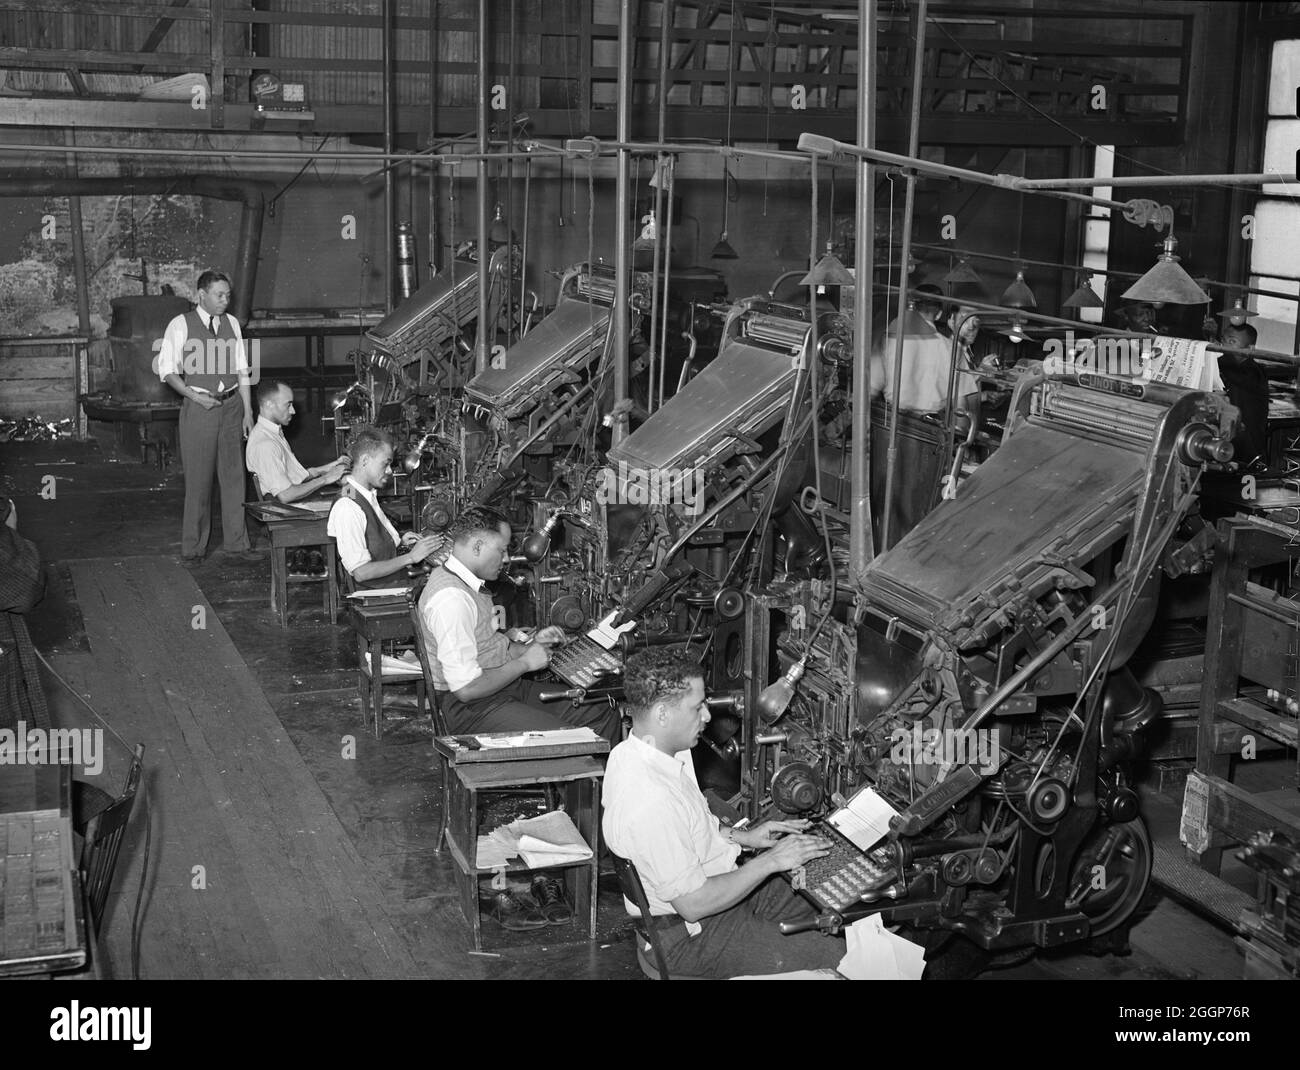 Linotype opérateurs du Chicago Defender, un journal noir, à Chicago, Illinois, 1941.Photographié par Russell Lee. Banque D'Images